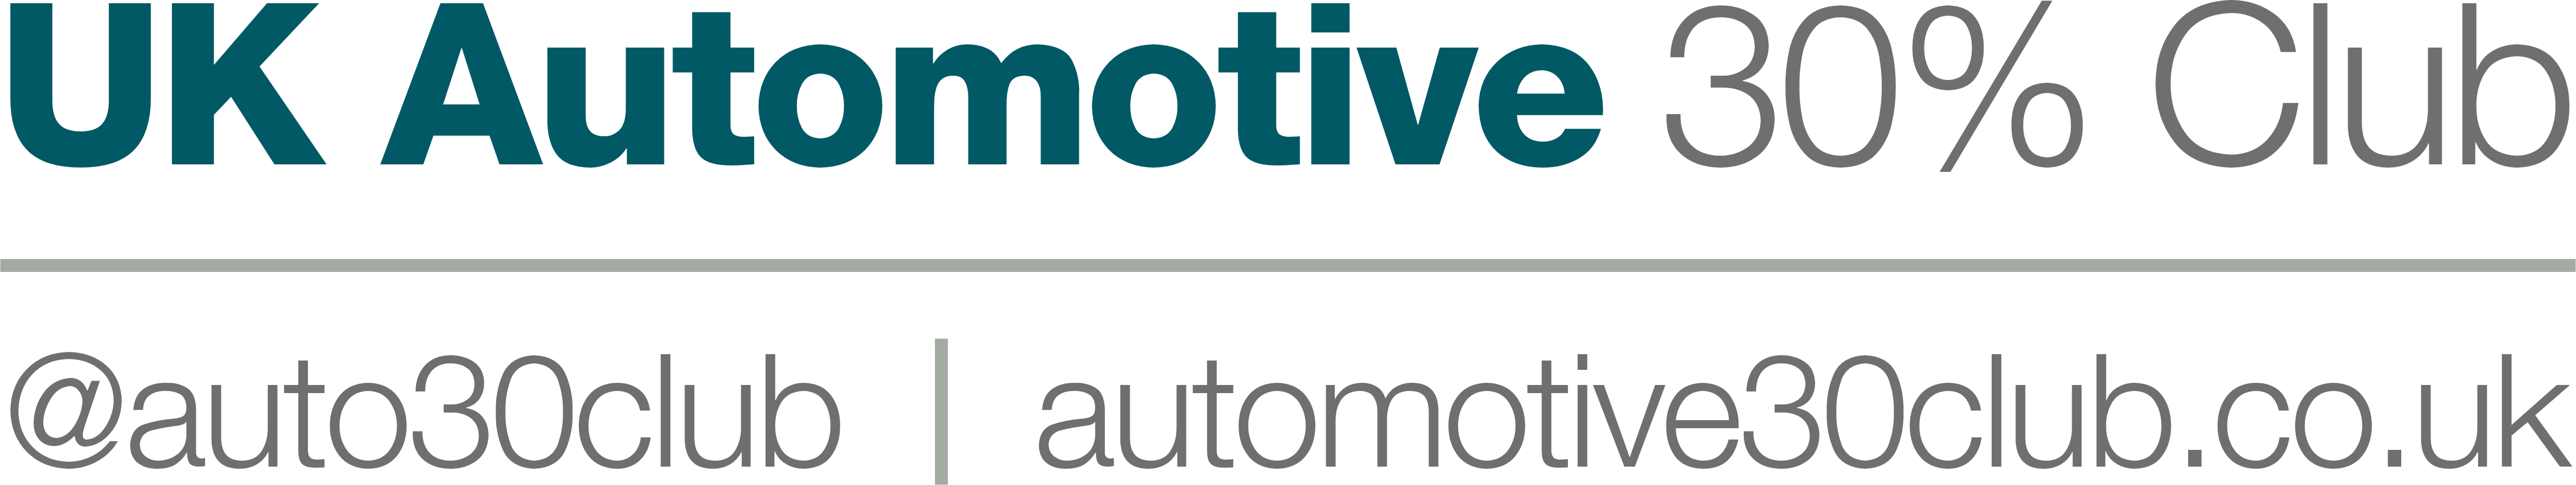 UK Automotive 30% Club (remastered logo)